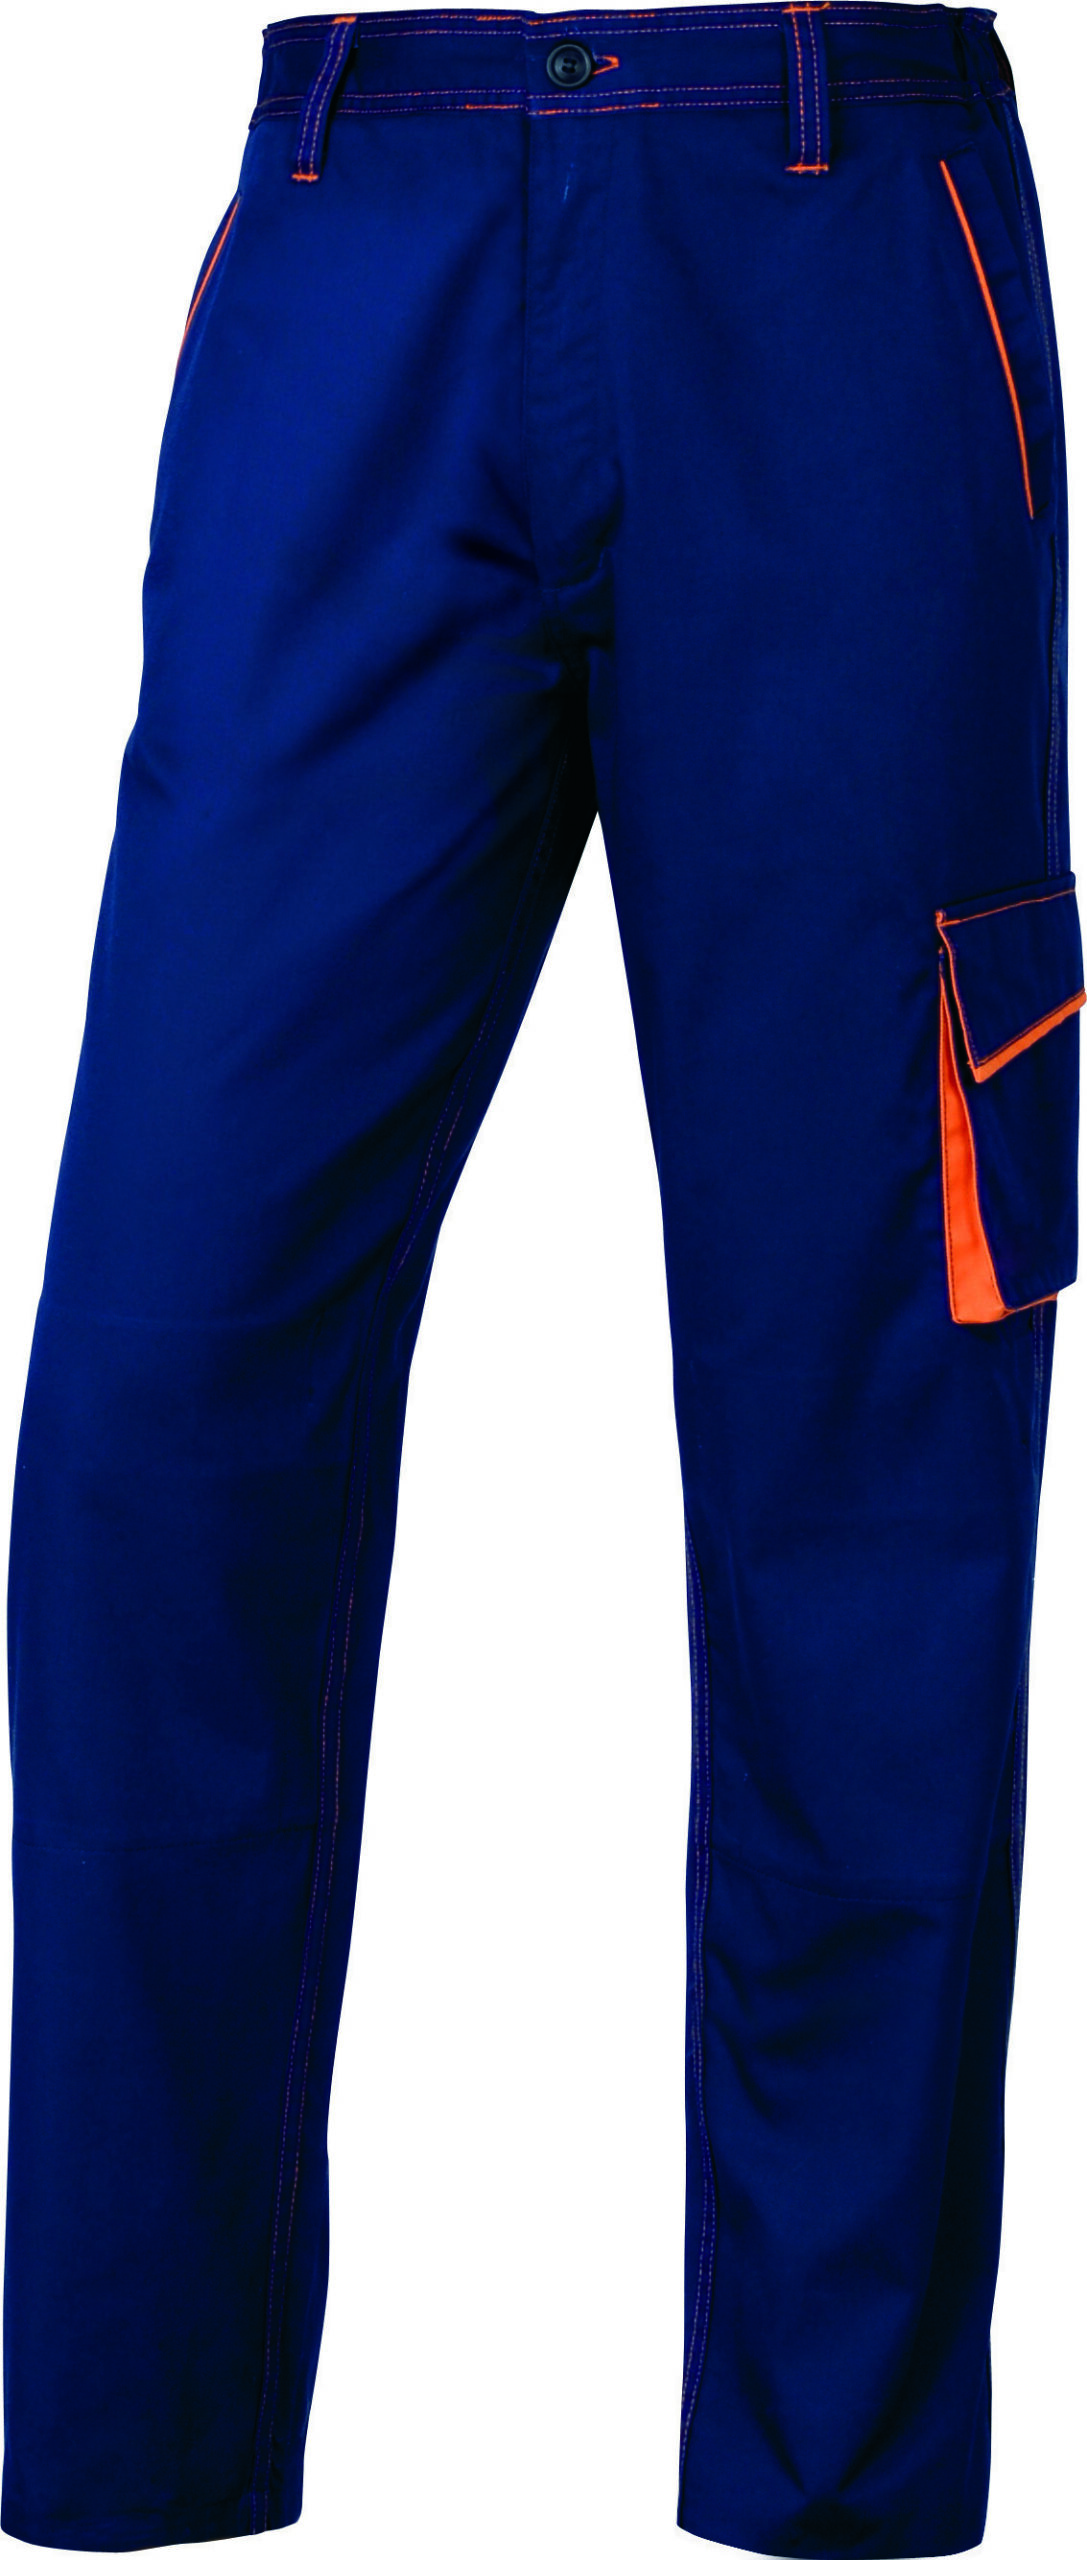 Pantalone da Lavoro M6pan Blu Arancio Tg Xl Panostyle M6panbmxg 3295249151256